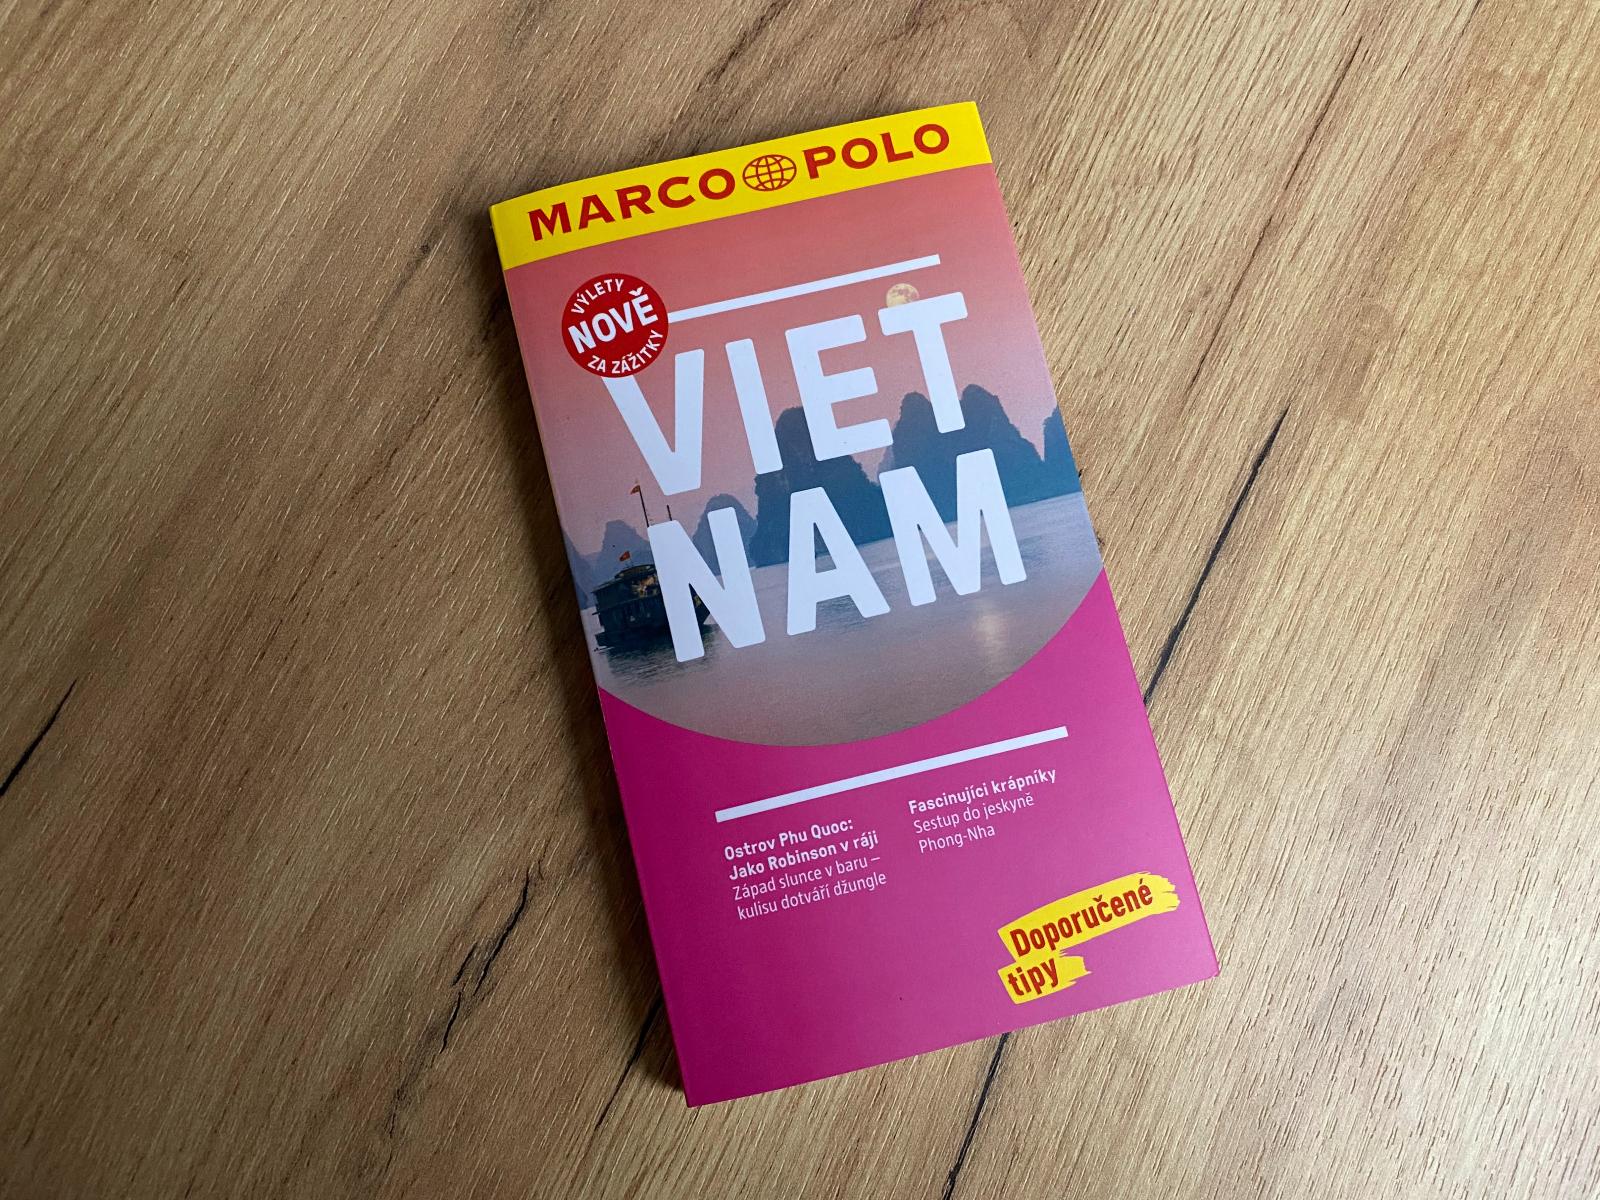 Vietnam sprievodca Marco Polo - Knihy a časopisy